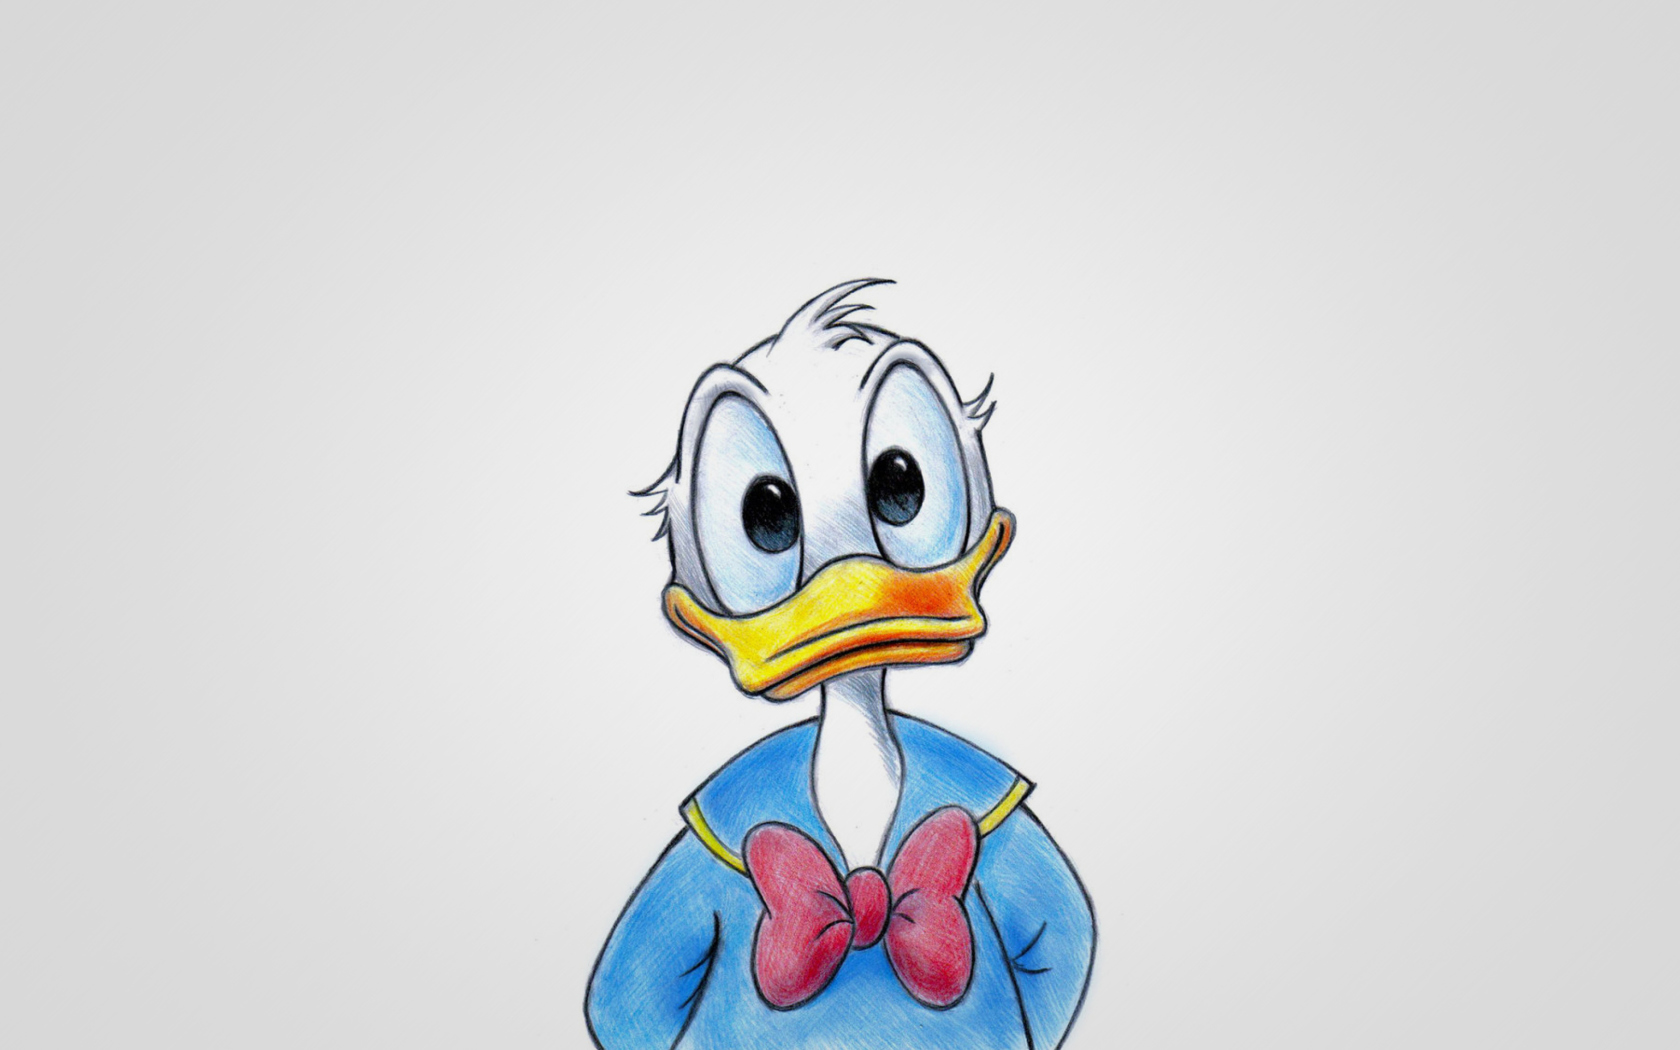 Cute Donald Duck wallpaper 1680x1050